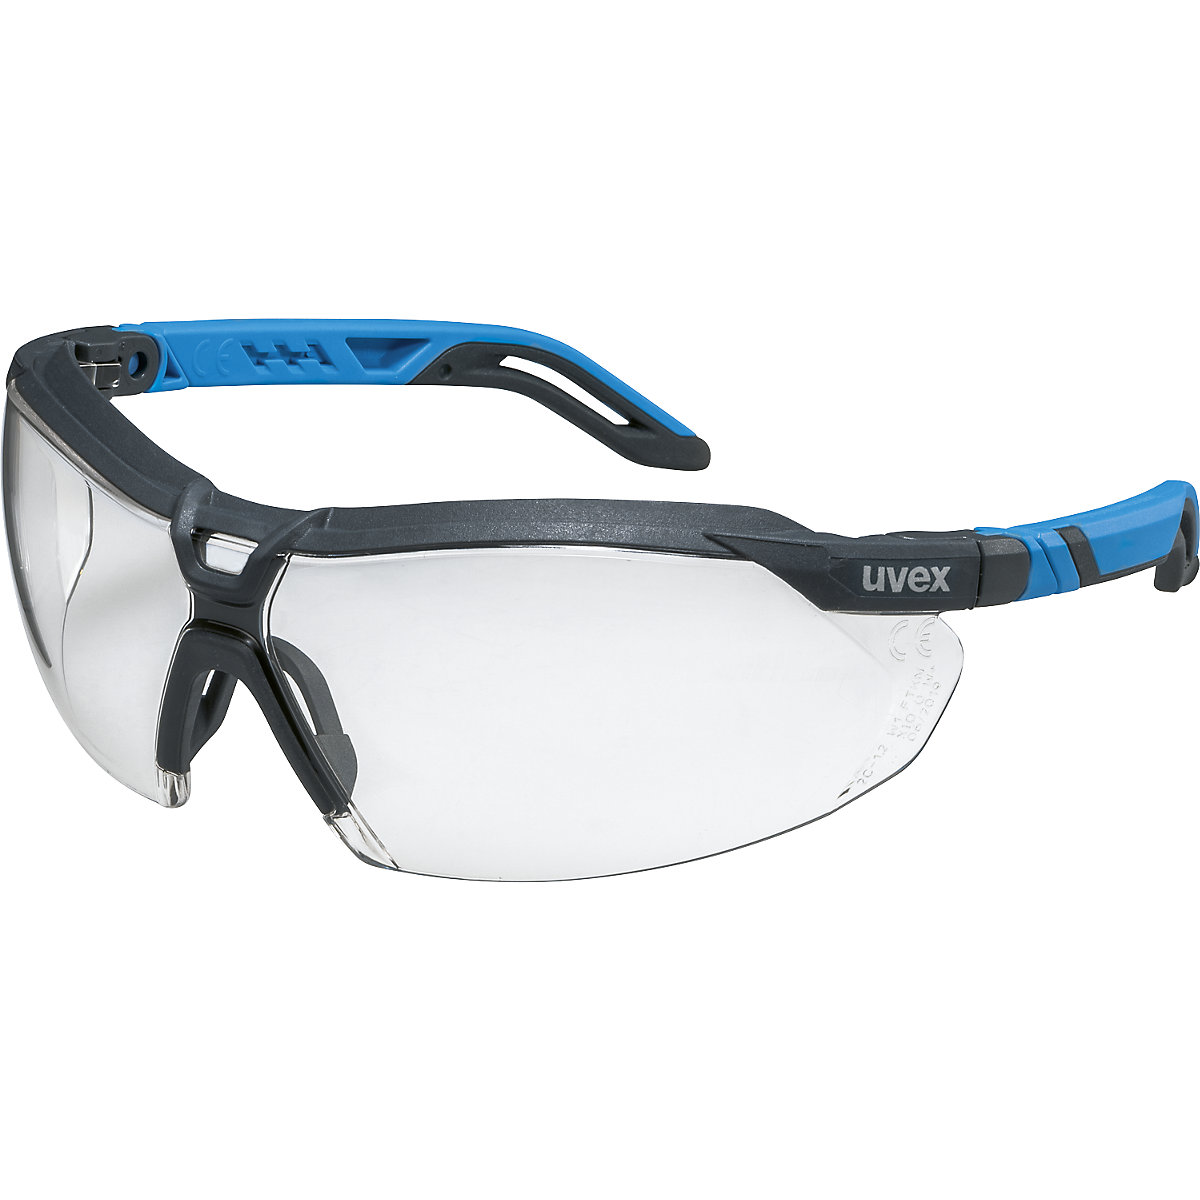 Száras védőszemüveg i-sorozat - Uvex